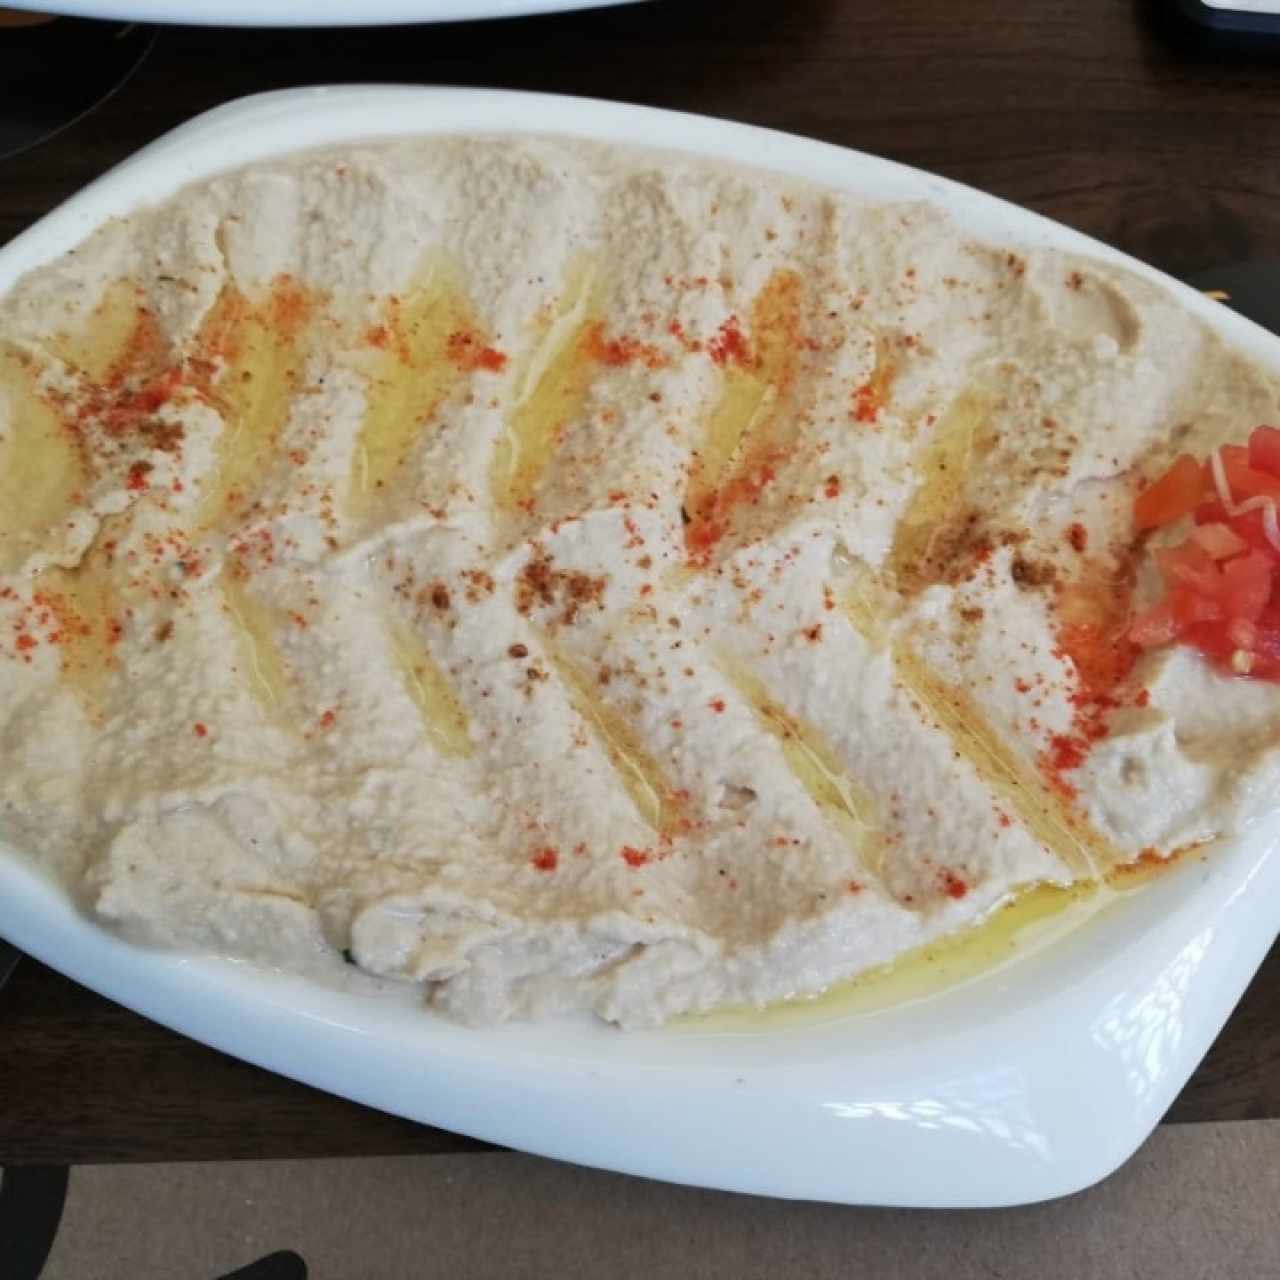 Appetizers - Hummus Layali